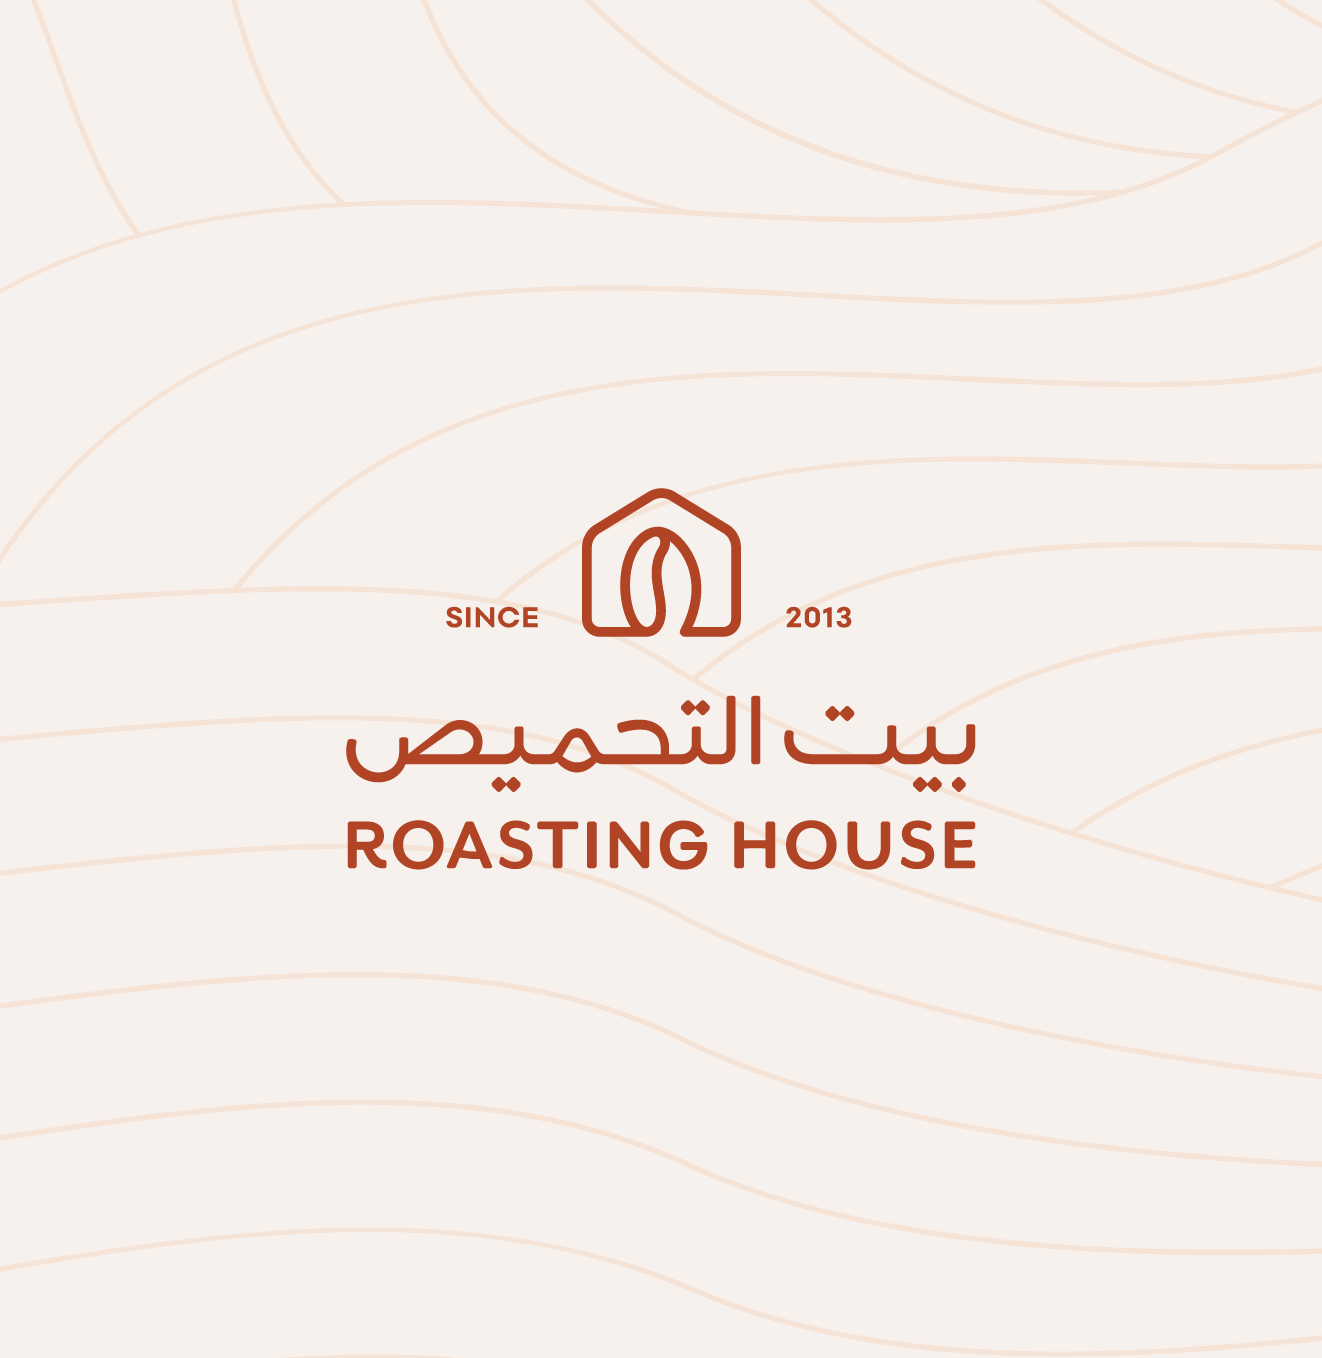 Roasting House